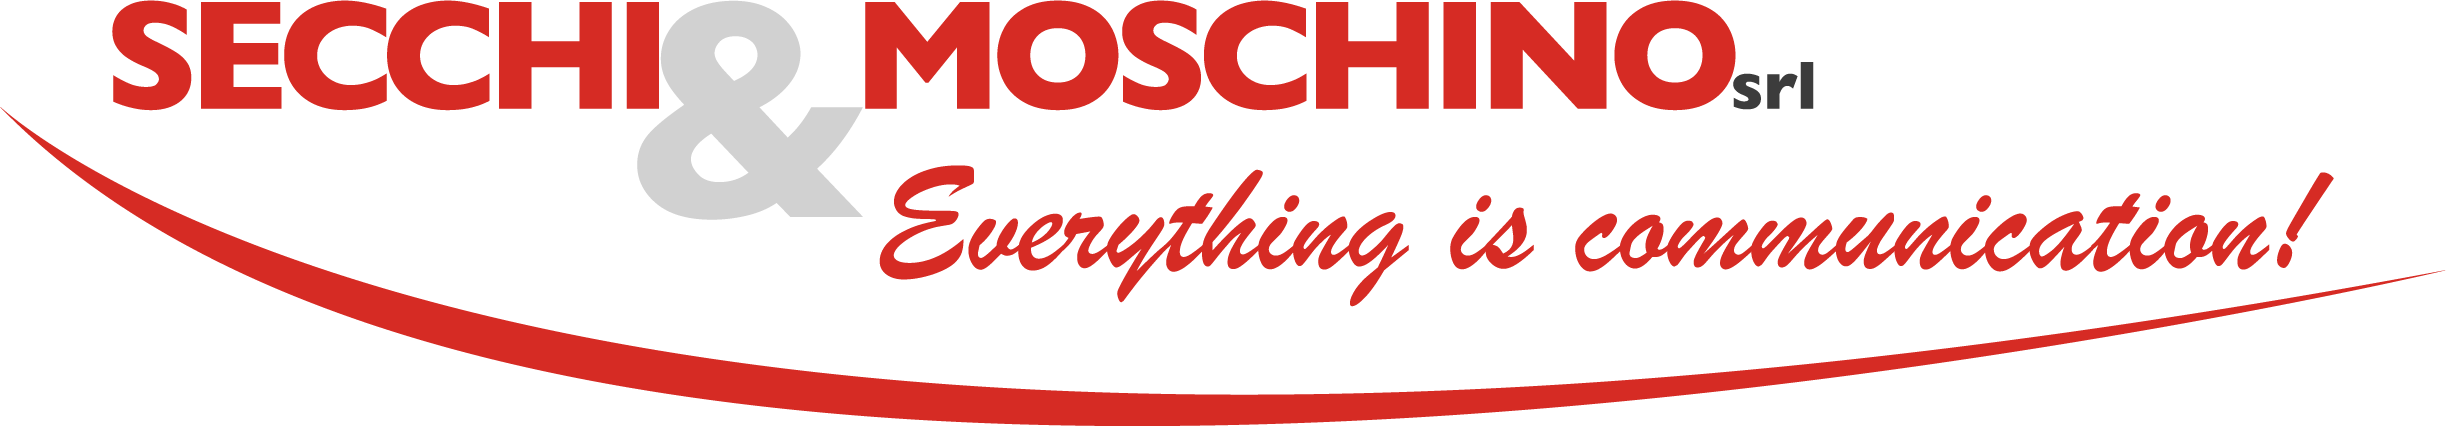 Secchi & Moschino Logo